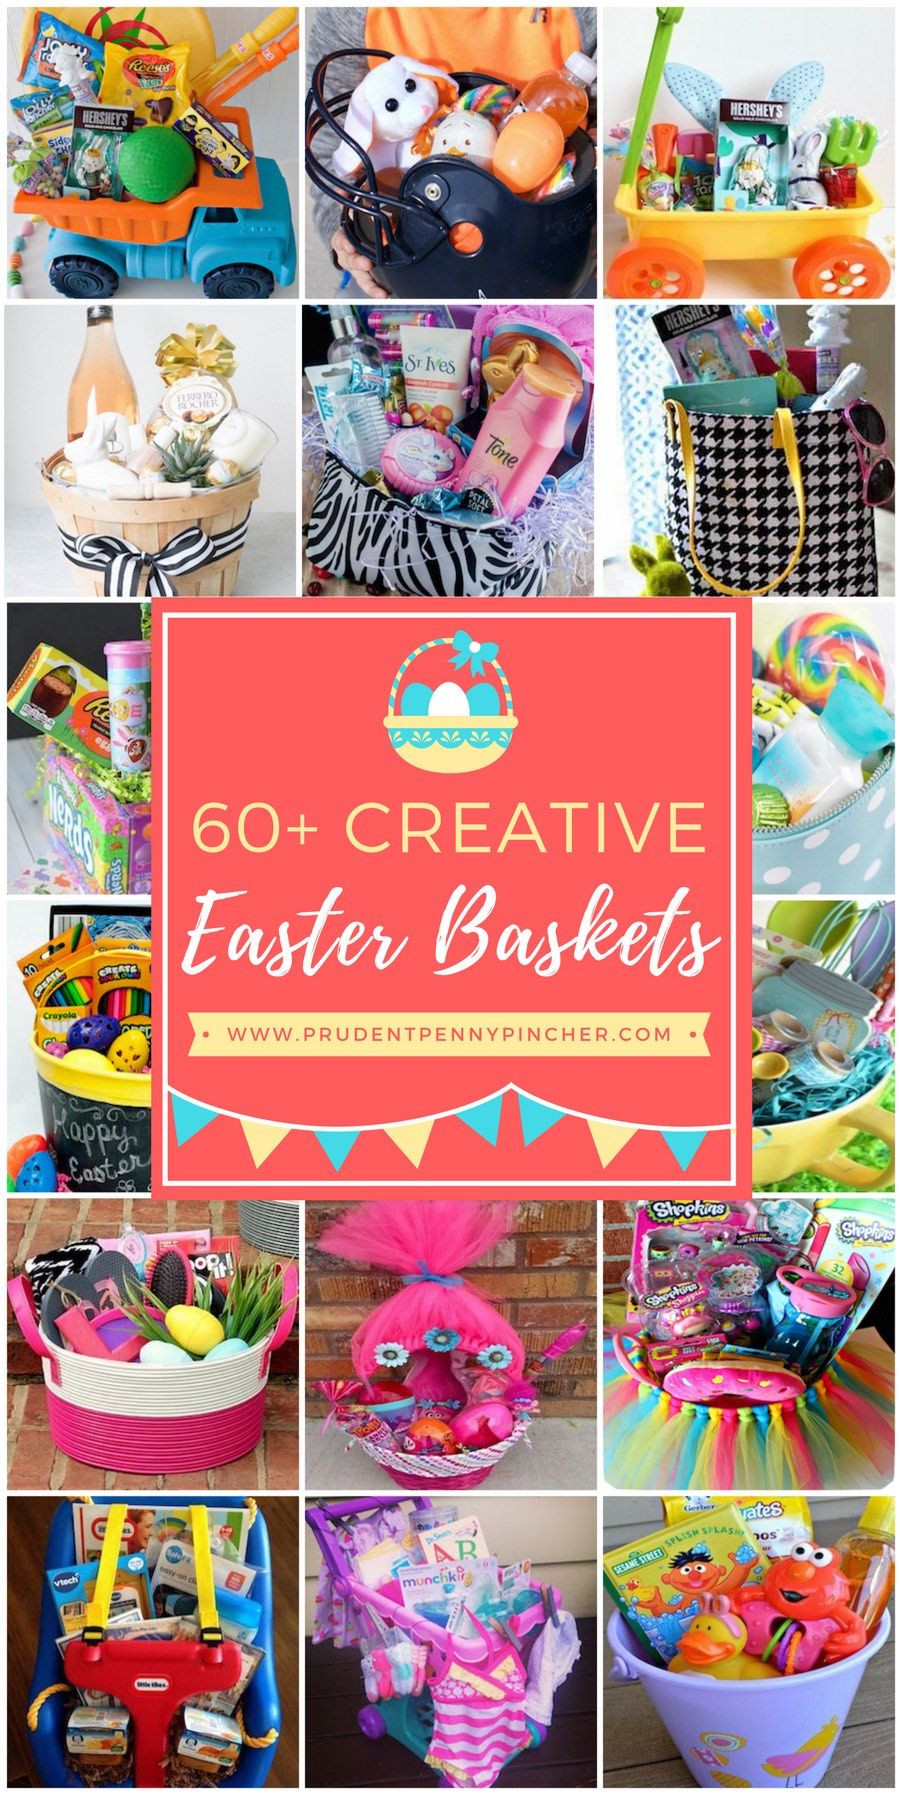 DIY Easter Basket Ideas For Toddlers
 60 Best DIY Easter Basket Ideas